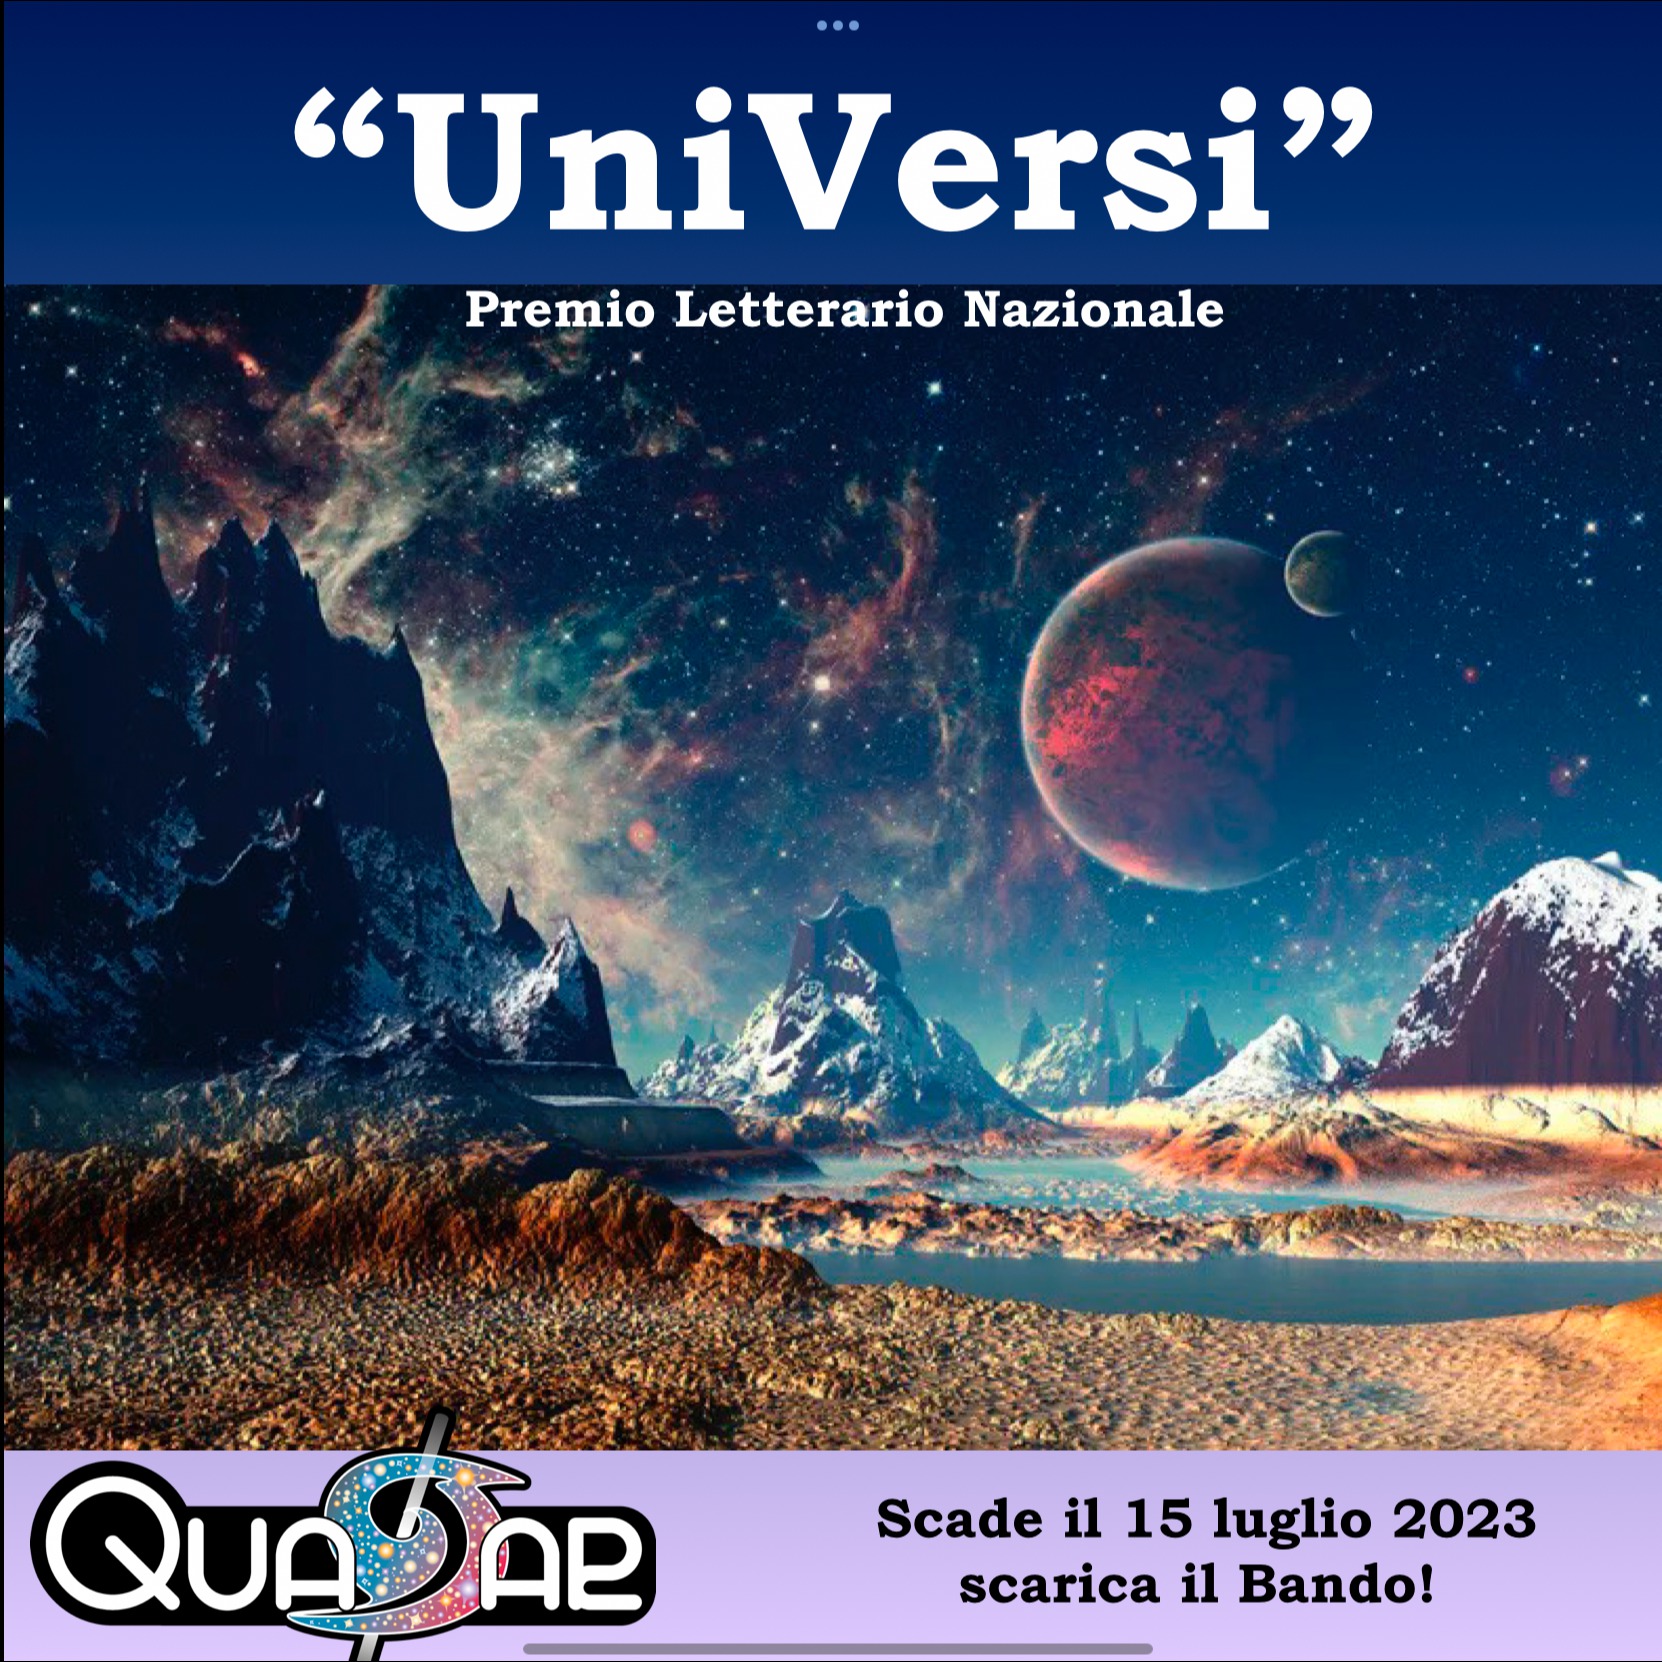 UniVersi un concorso letterario per parlare dell’Universo – ammessi tutti i generi